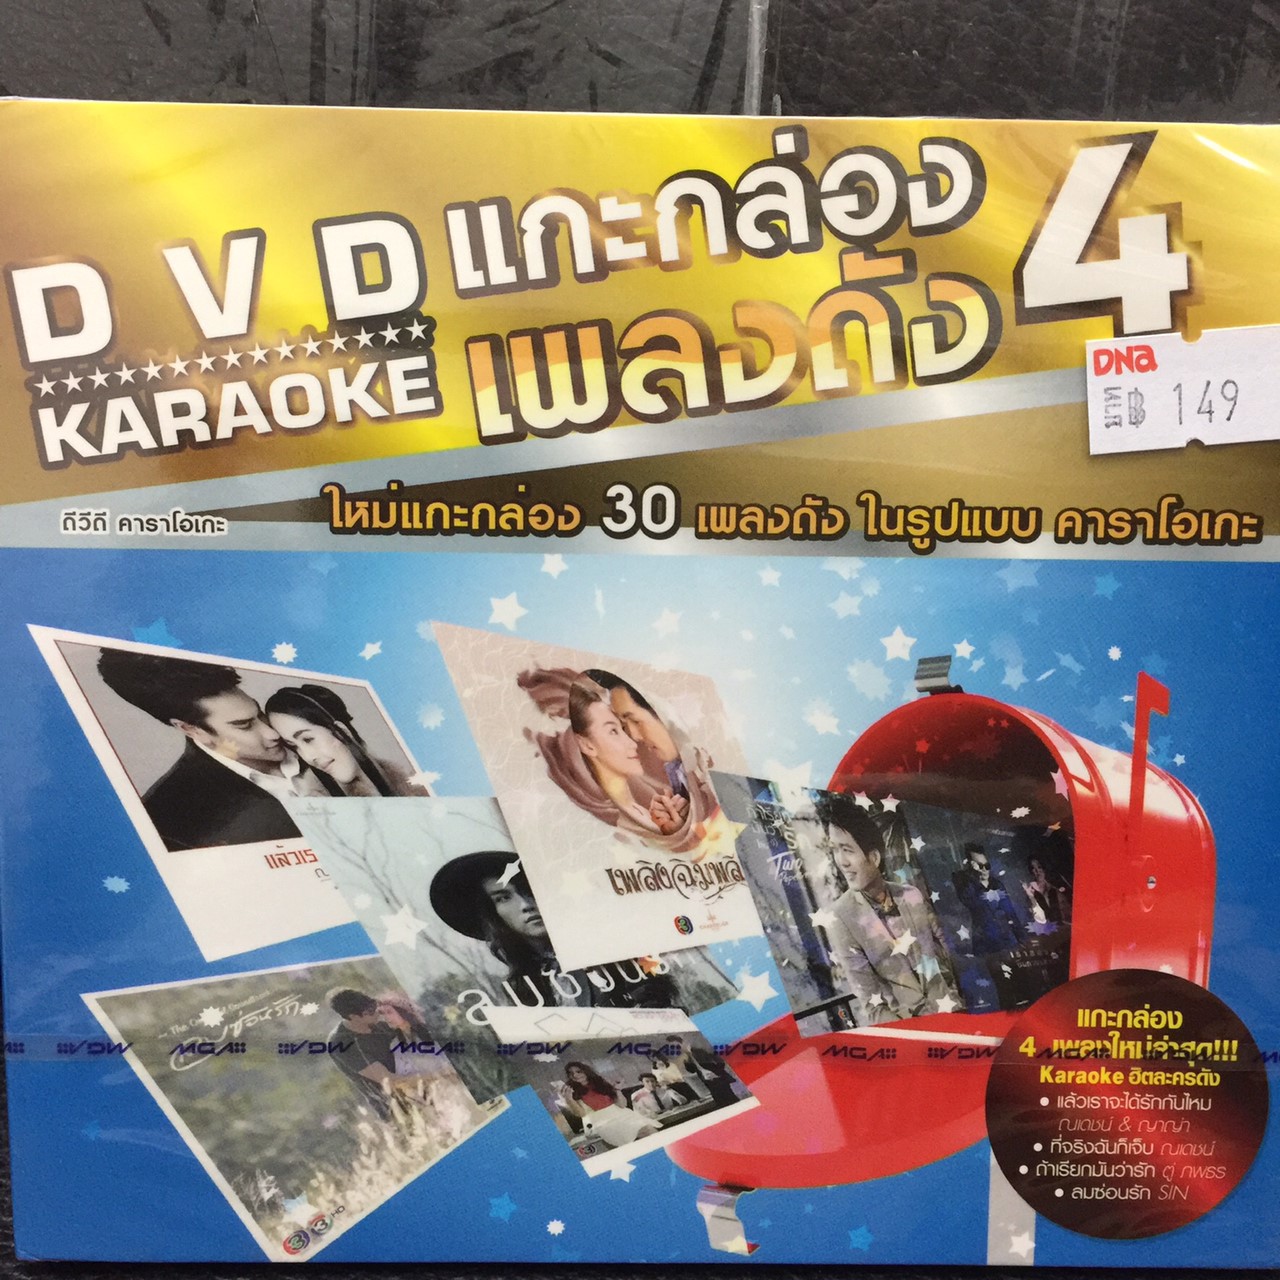 DVD KARAOKE แกะกล่องเพลงดัง 4 แผ่นเดียว 30 เพลงคุ้ม